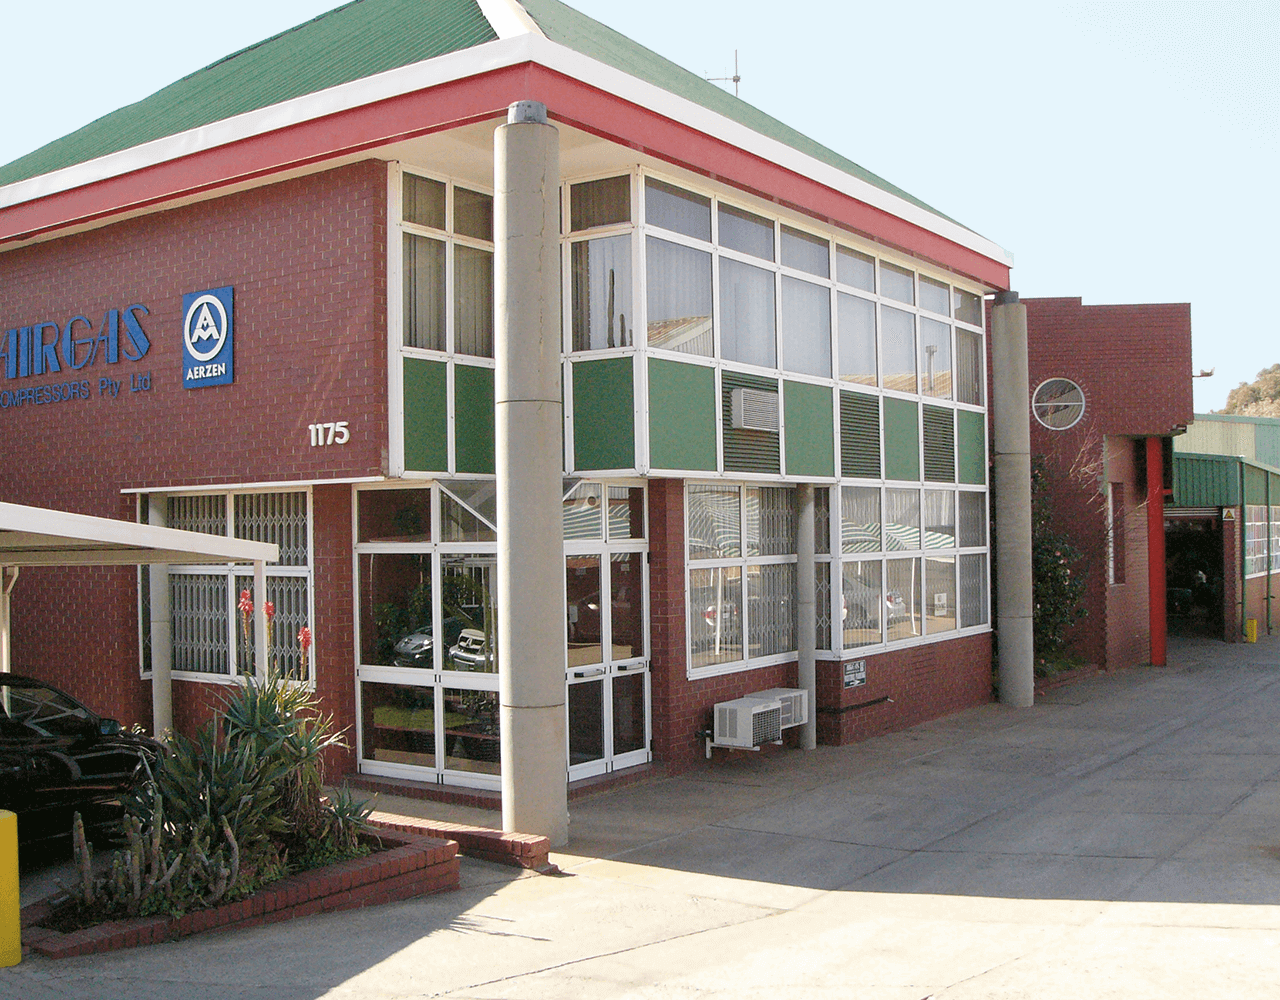 Imaginea clădirii Airgas Compressor în Africa de Sud